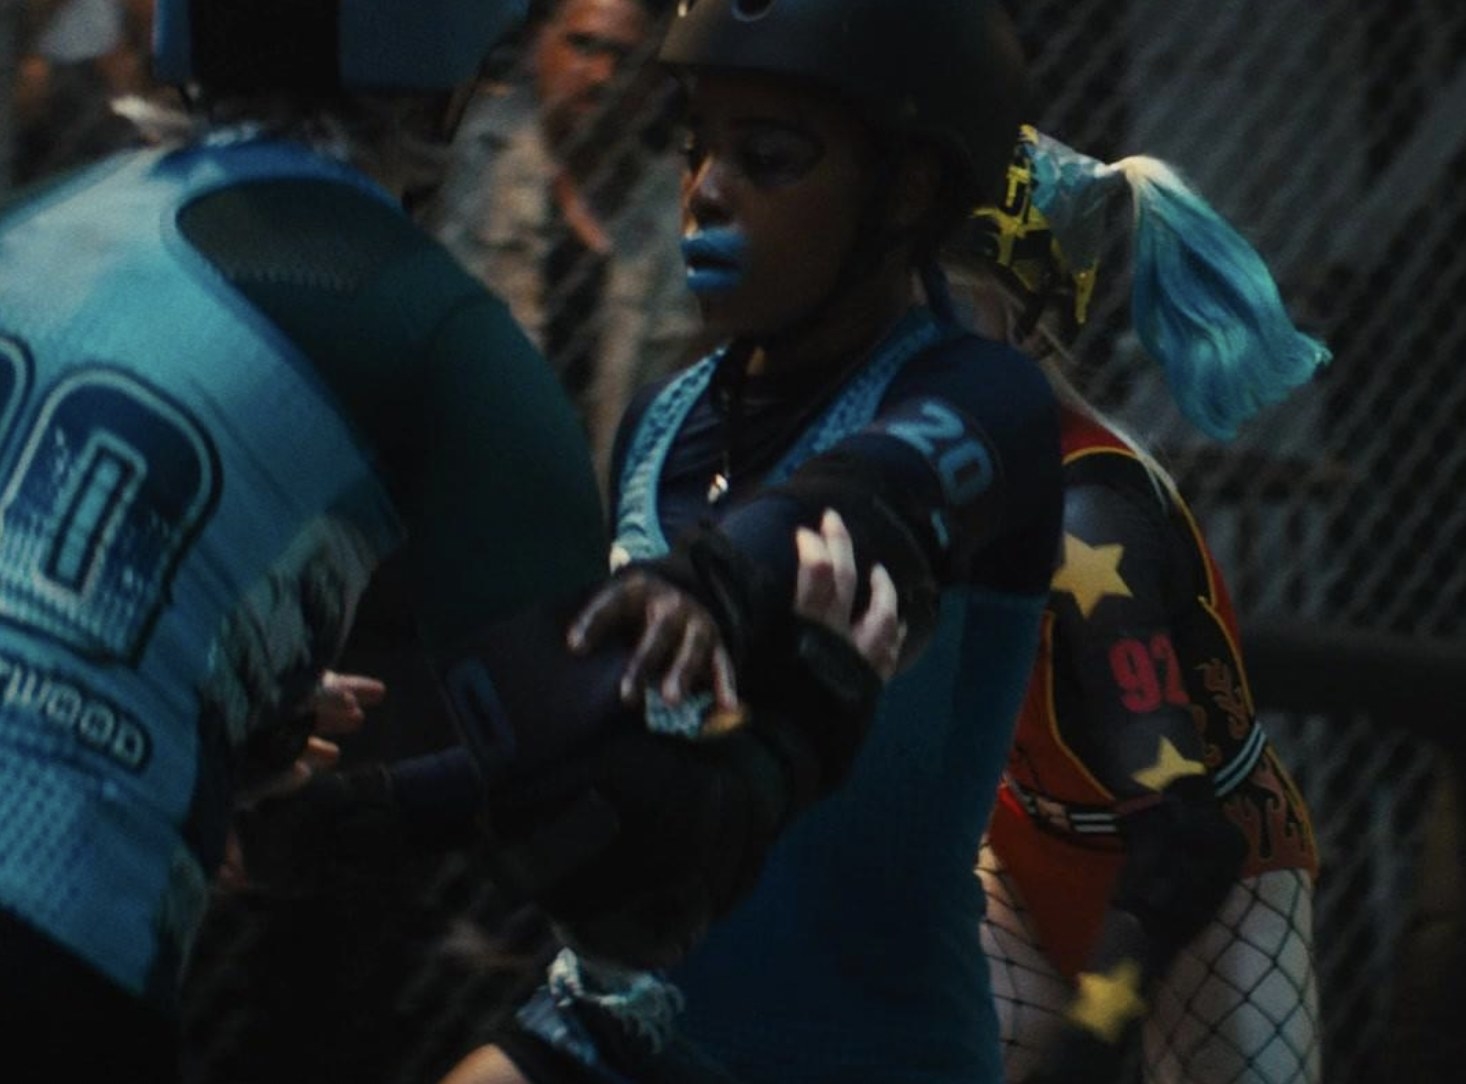 Harley Quinn in a roller derby